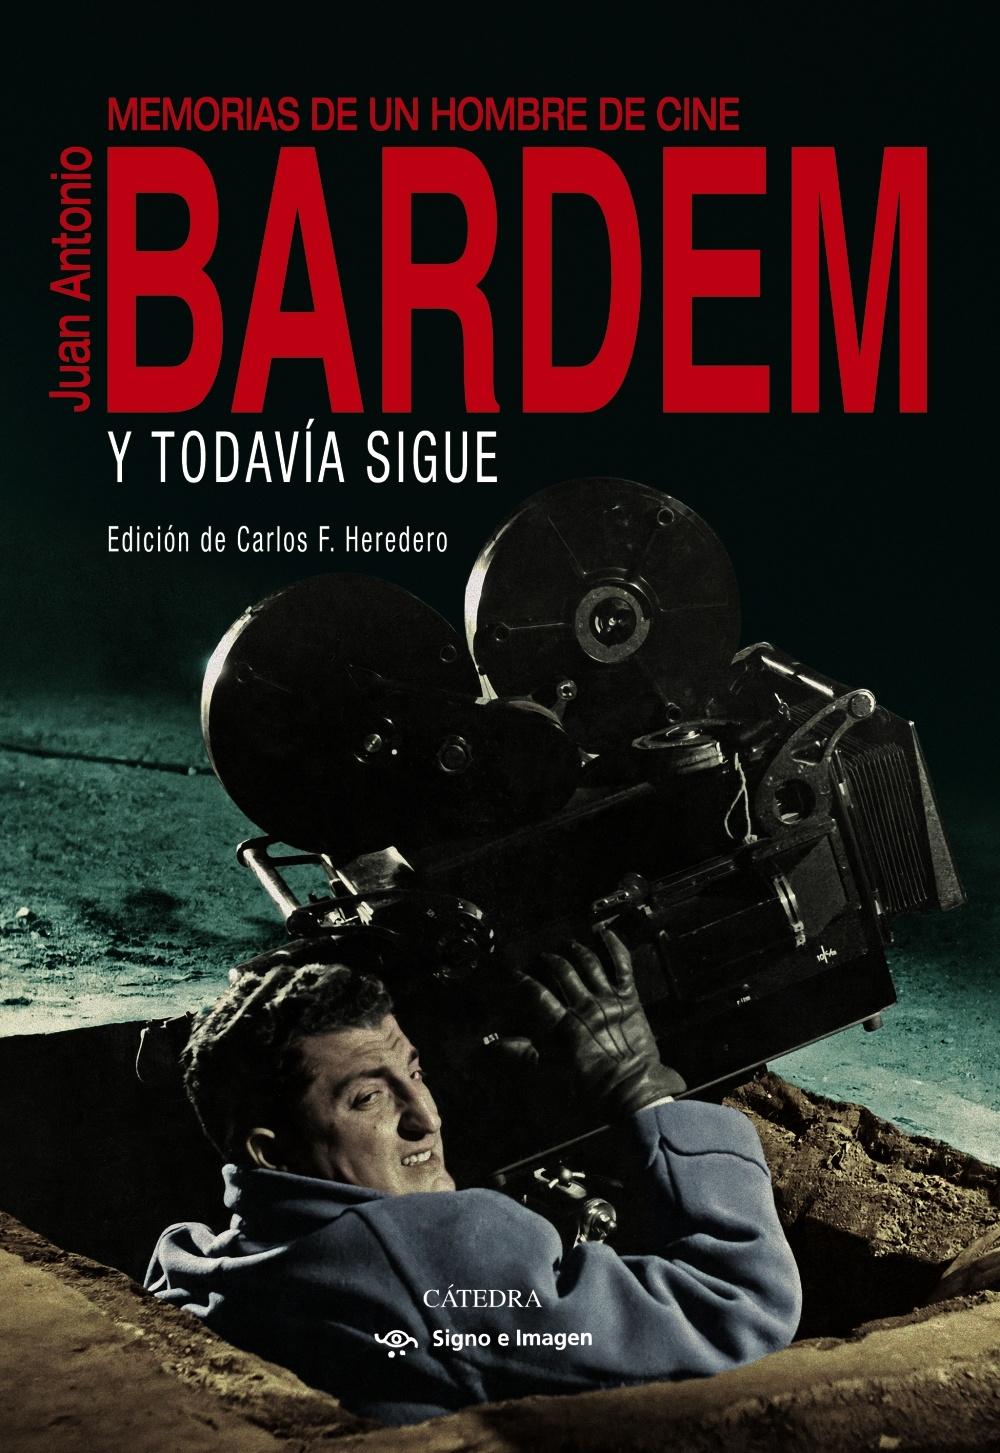 Y todavía sigue (Memorias de Juan Antonio Bardem) "Memorias de un hombre de cine"